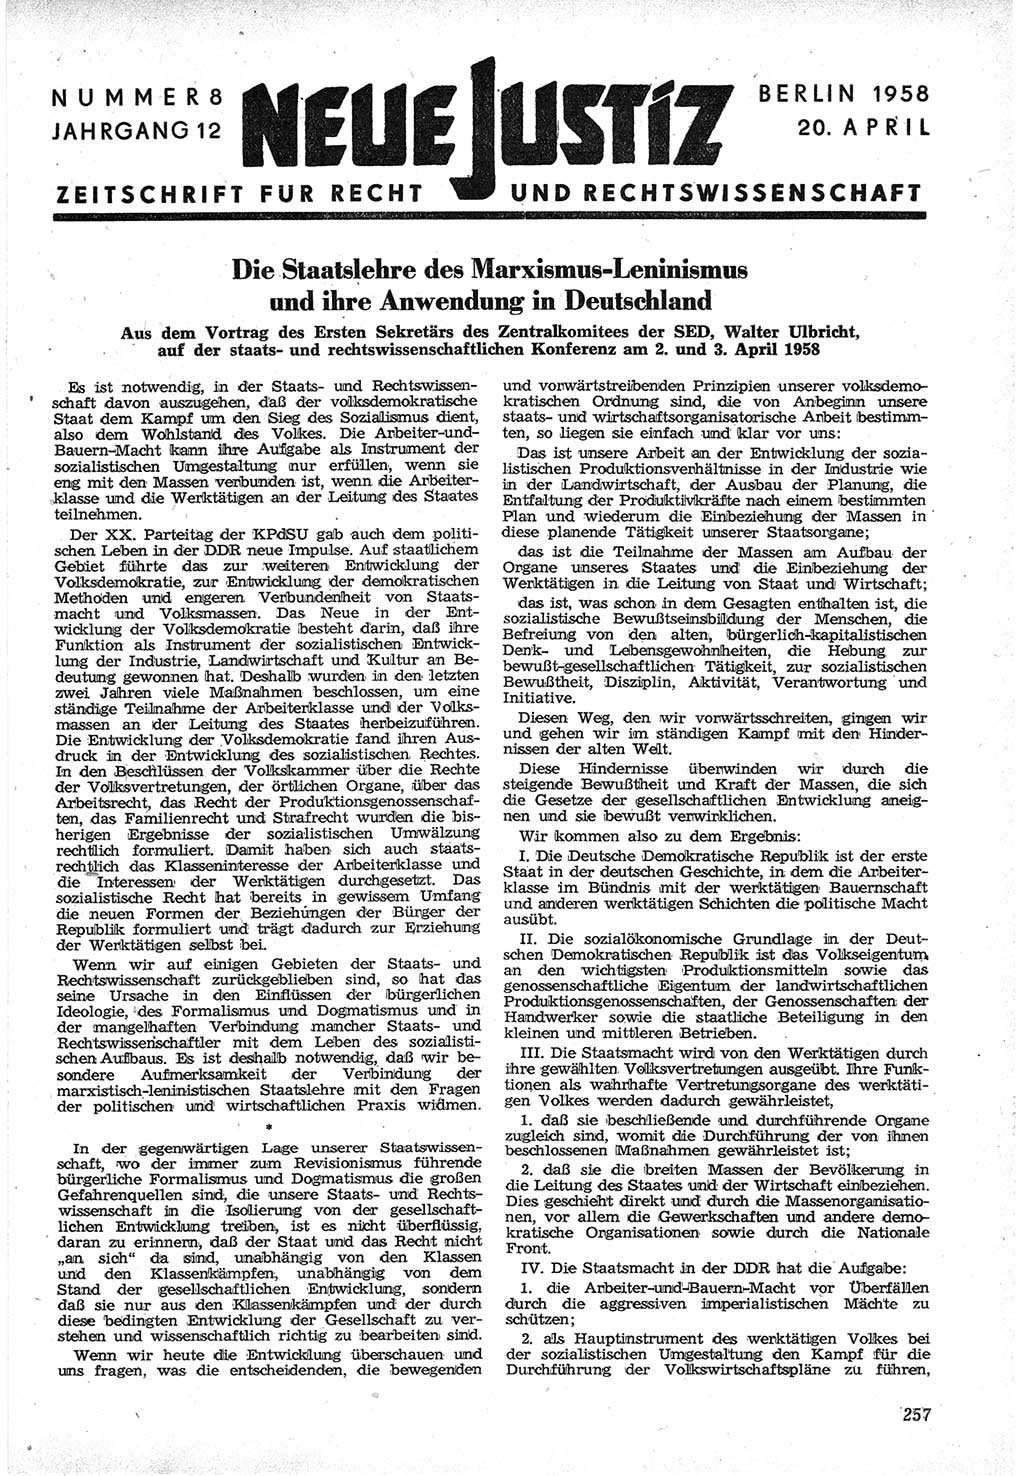 Neue Justiz (NJ), Zeitschrift für Recht und Rechtswissenschaft [Deutsche Demokratische Republik (DDR)], 12. Jahrgang 1958, Seite 257 (NJ DDR 1958, S. 257)